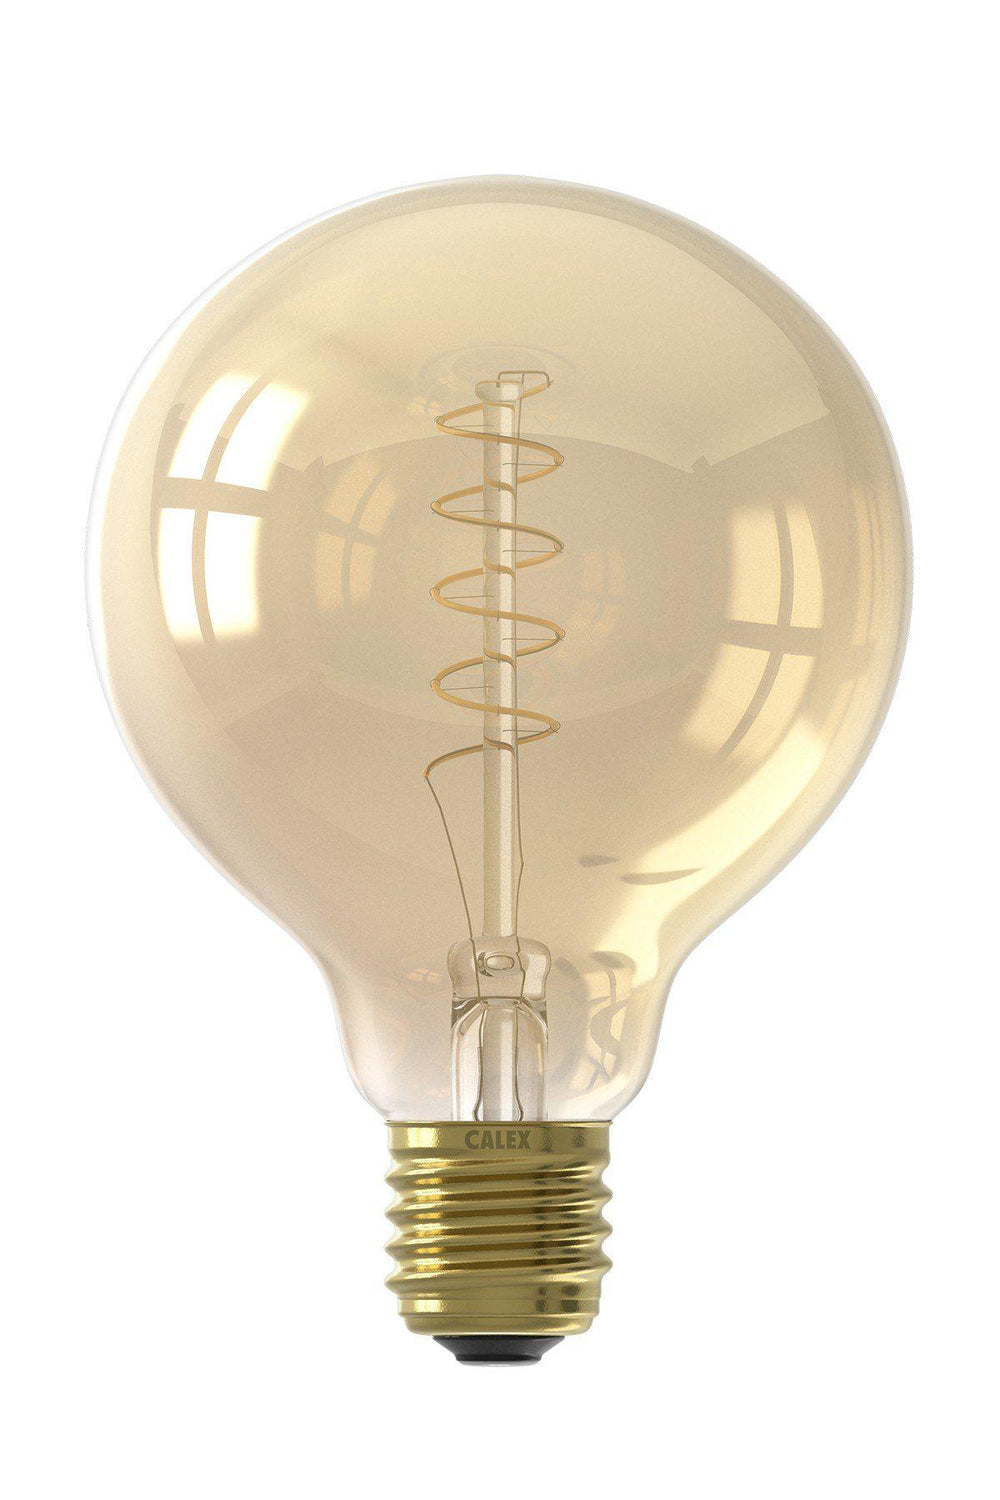 Calex 425779 | LED Gold Spiral Filament Bulb | E27 | G95 | 4W